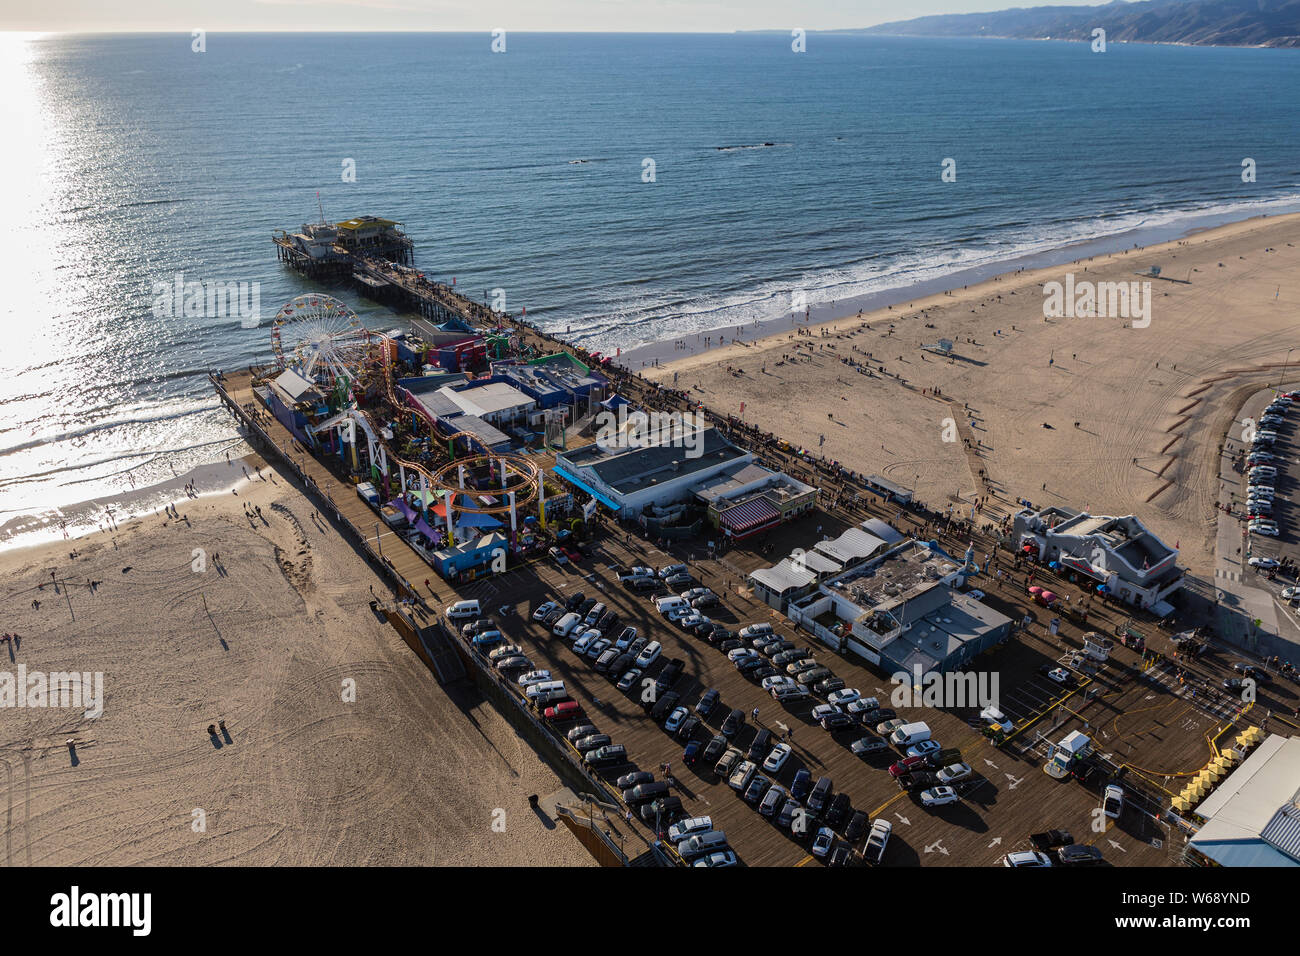 Santa Monica, Californie, USA - 17 décembre 2016 Après-midi : Vue aérienne de la célèbre jetée de Santa Monica et de la plage sur la côte du comté de Los Angeles. Banque D'Images